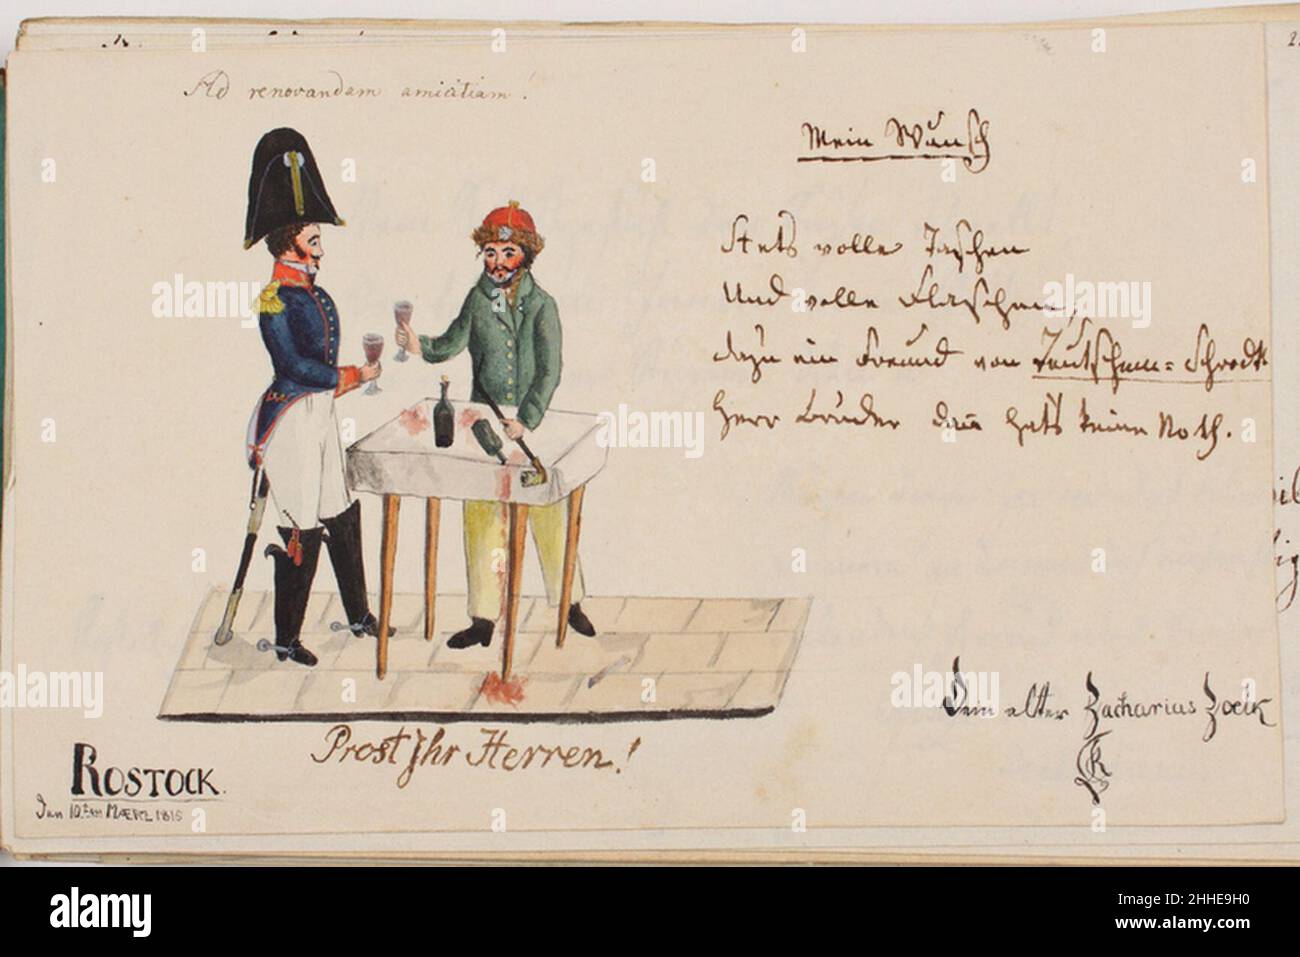 Stammbuch Beselin Eintrag Zoelck 1815. Foto Stock